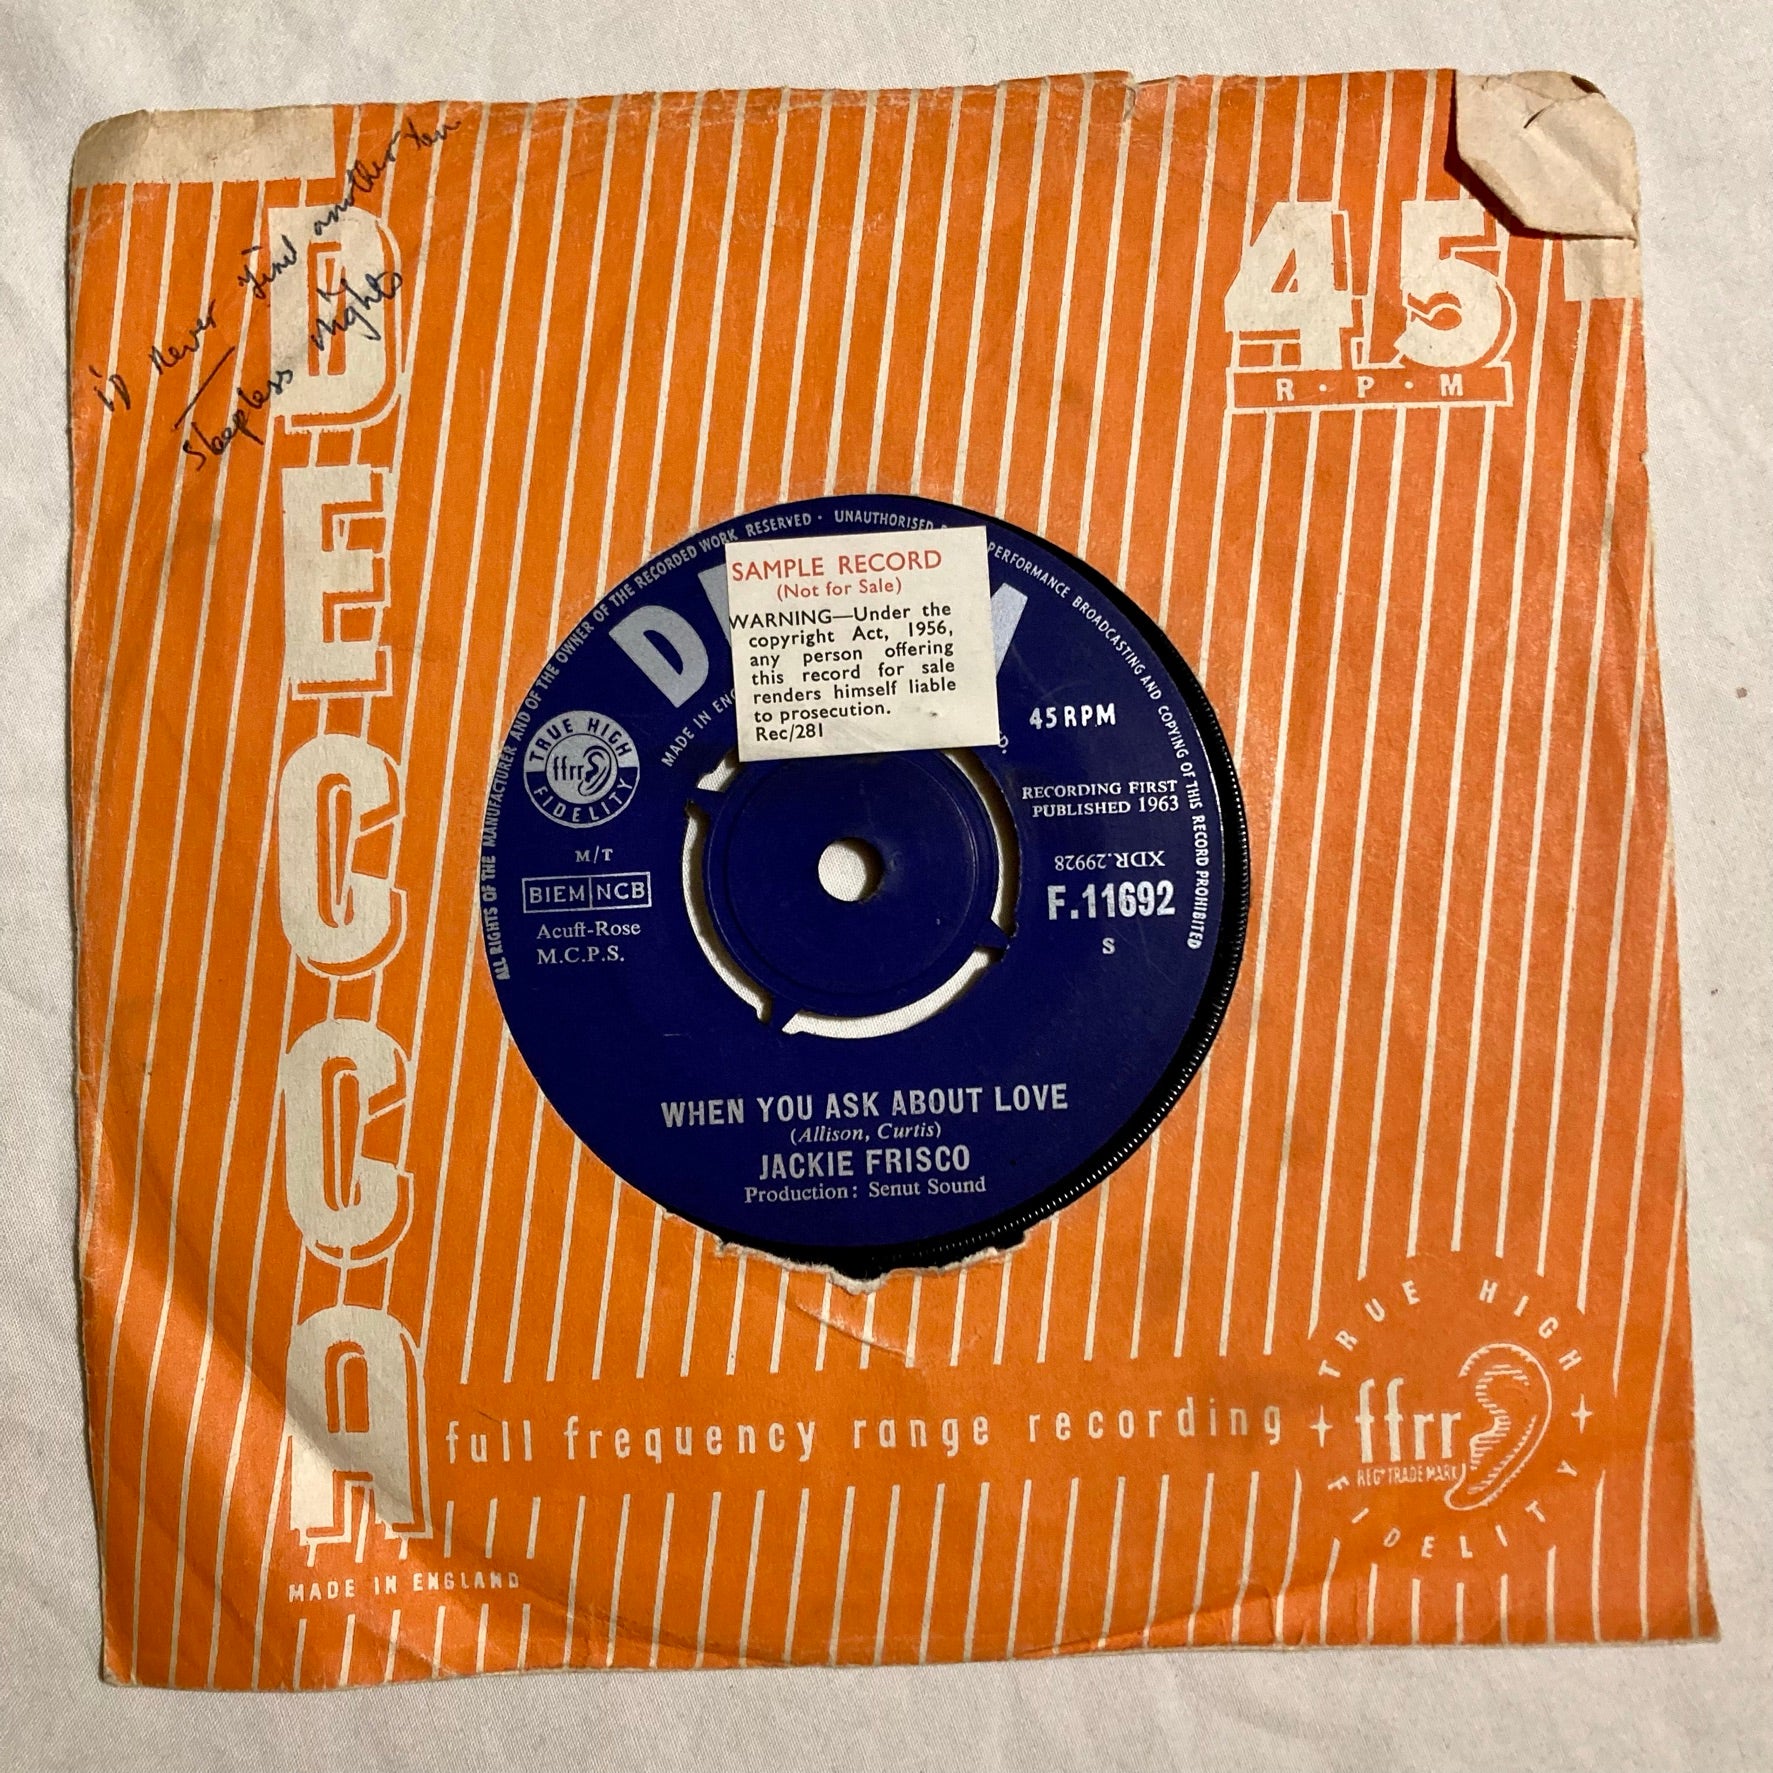 David Bowie – Hunky Dory (LP de presse précoce)